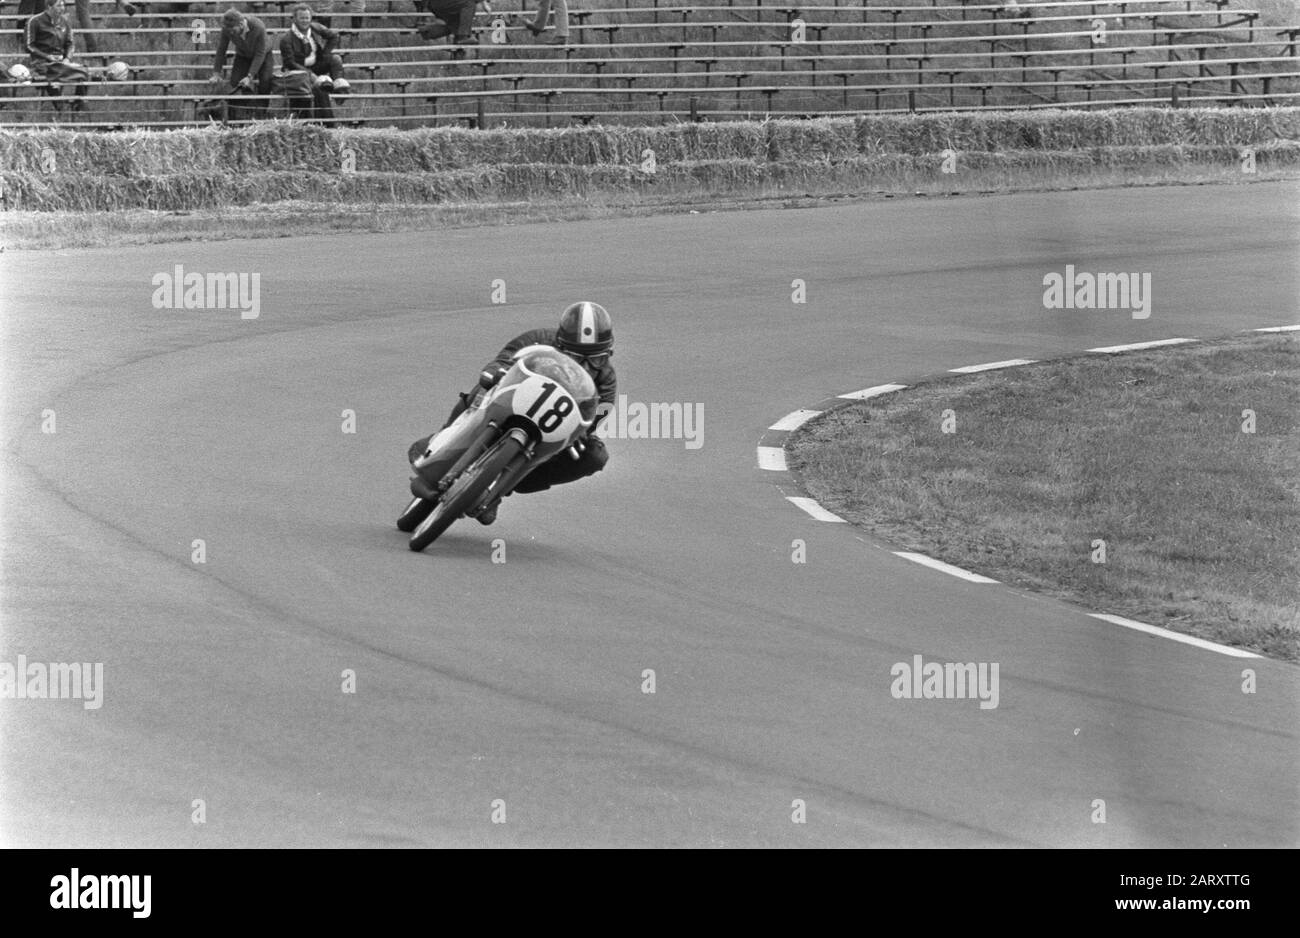 Oorzaak thema Geloofsbelijdenis TT Assen 1970 TT-races in Assen. Training 50cc: Jan de Vries on the Van  Veen-Kreidler. Date: June 25, 1970 Location: Assen Keywords: motorcycle  racing, motorcycle racing, sport Person name: Vries, Jan de (